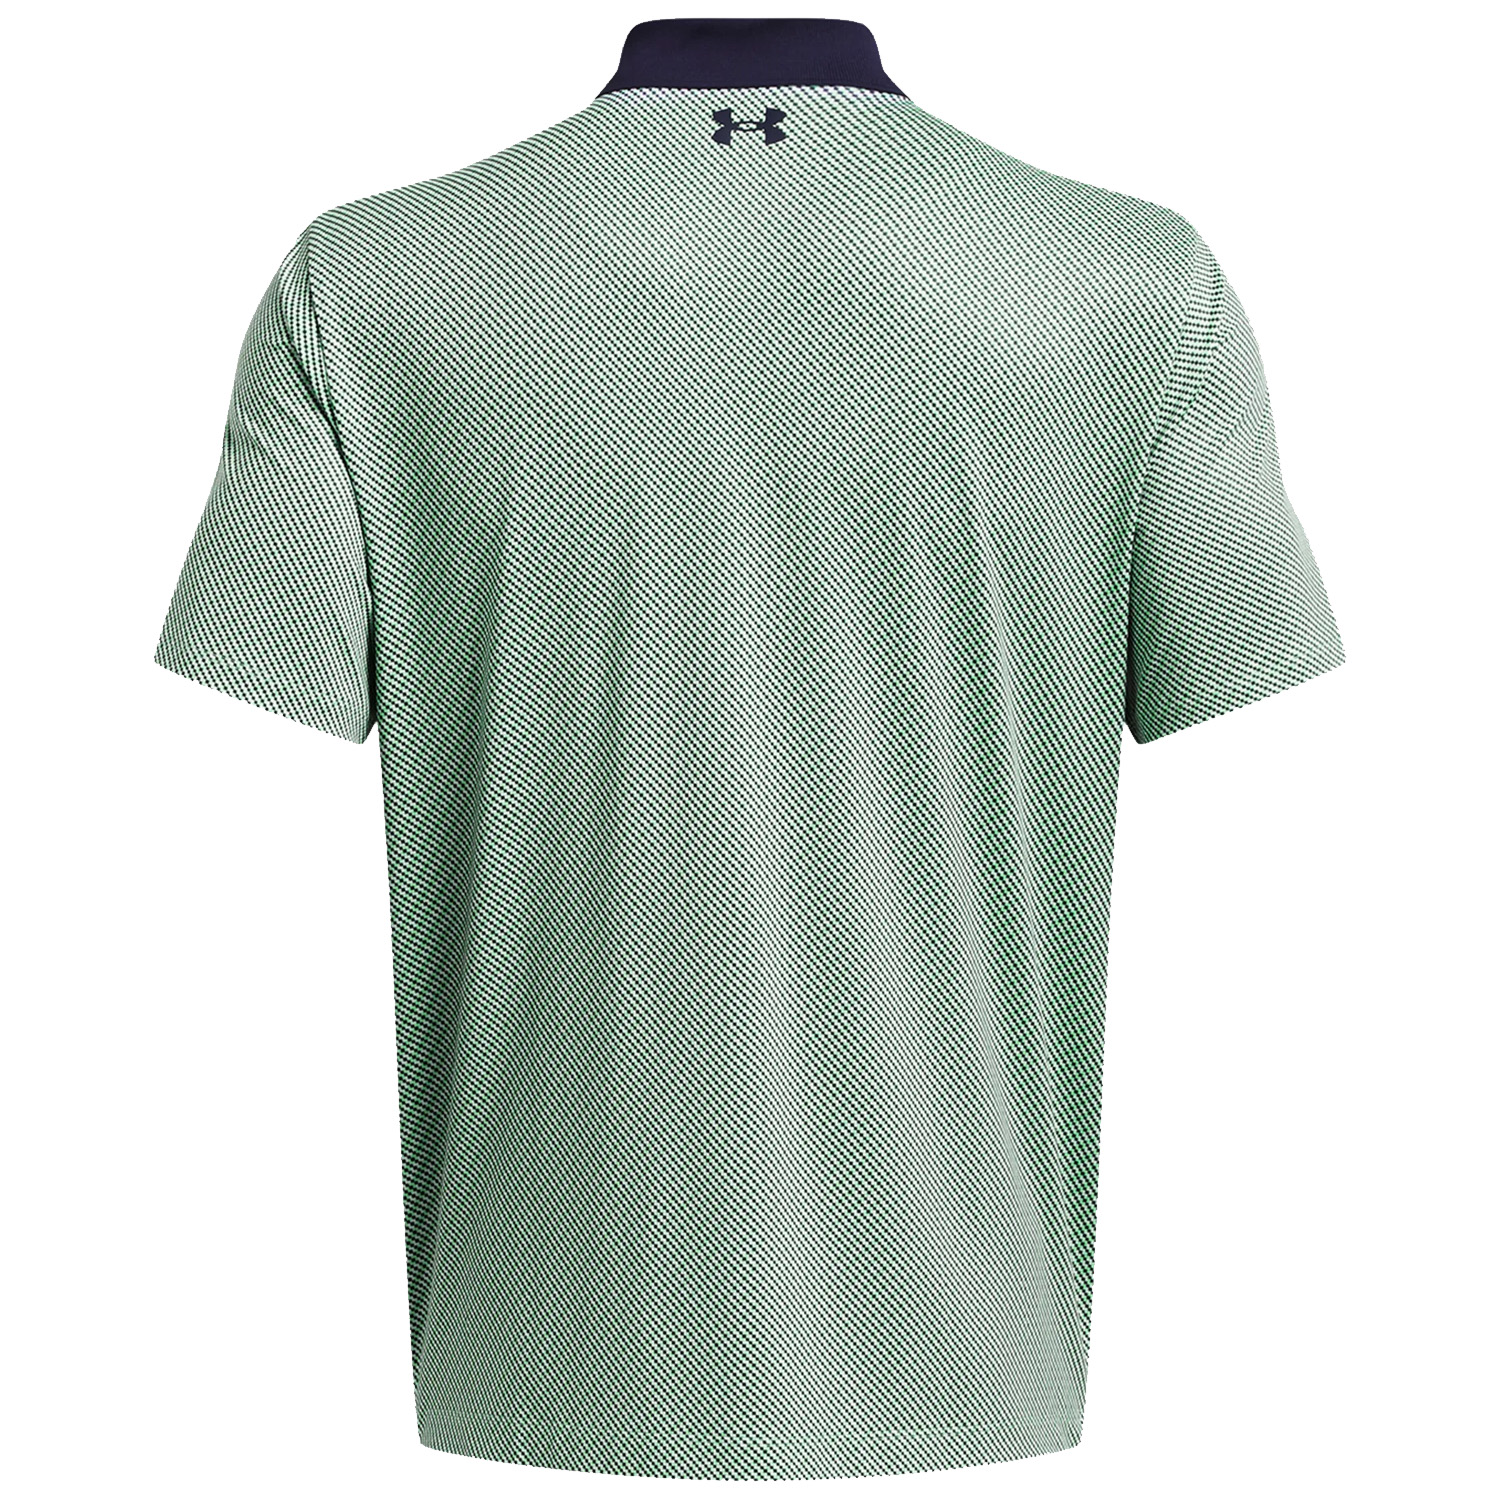 Under Armour Mens UA Playoff 3.0 Strike Golf Polo Shirt  - Matrix Green